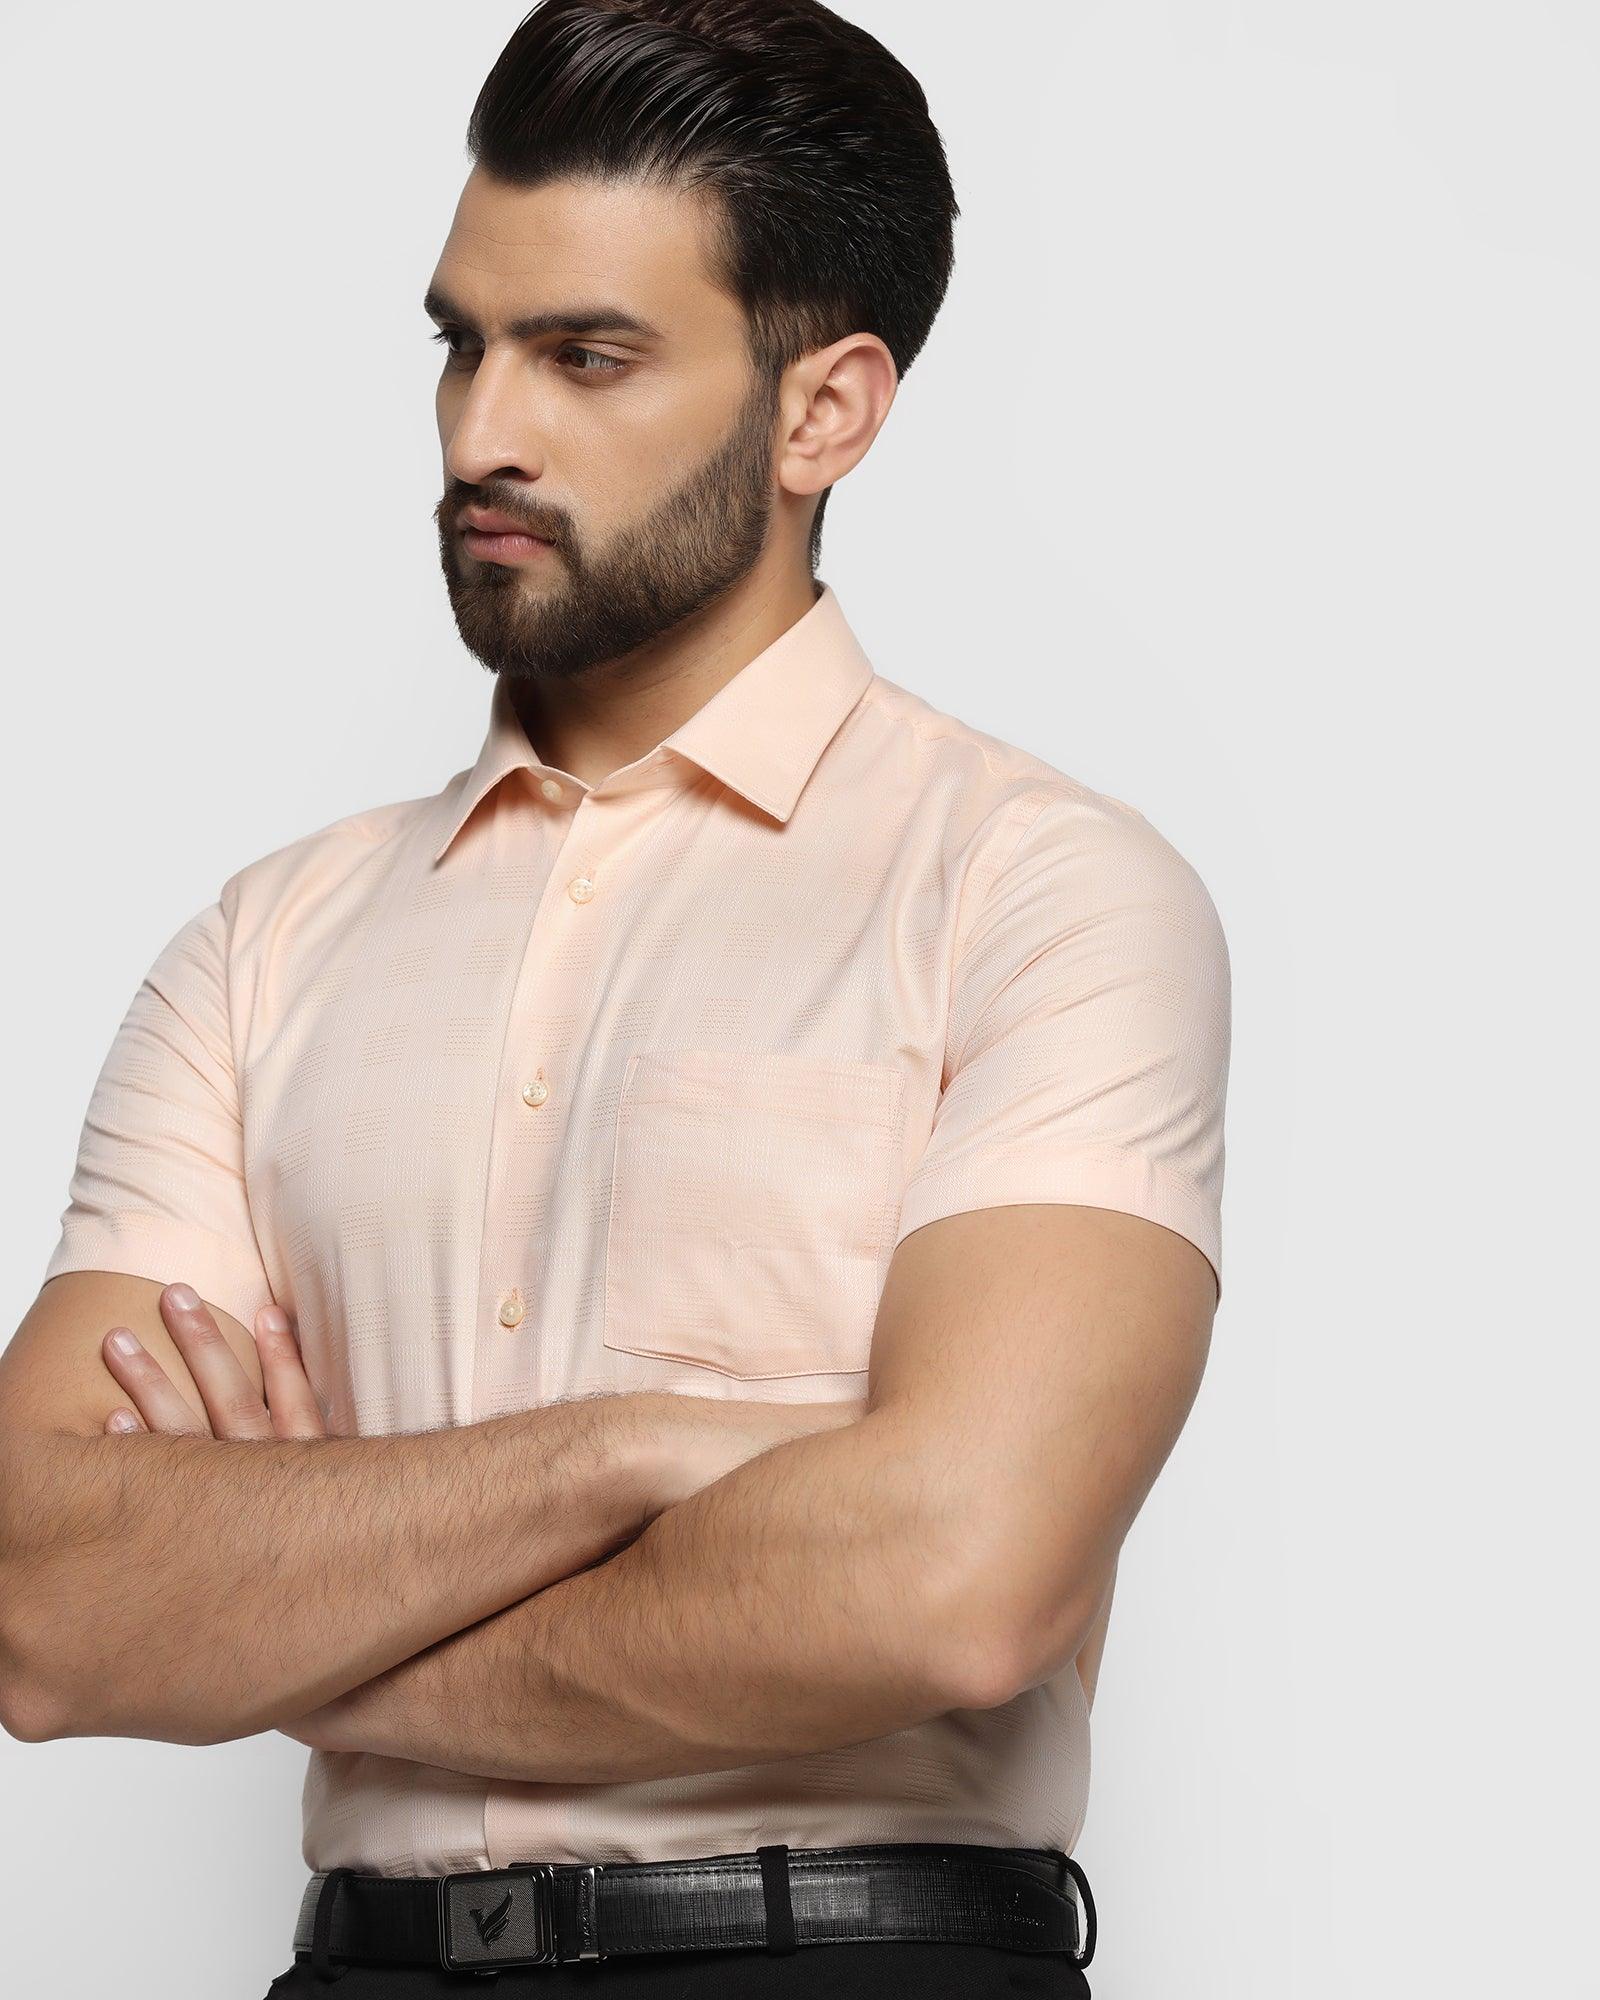 Buy Peach Check Print Full Sleeves Shirt for Men